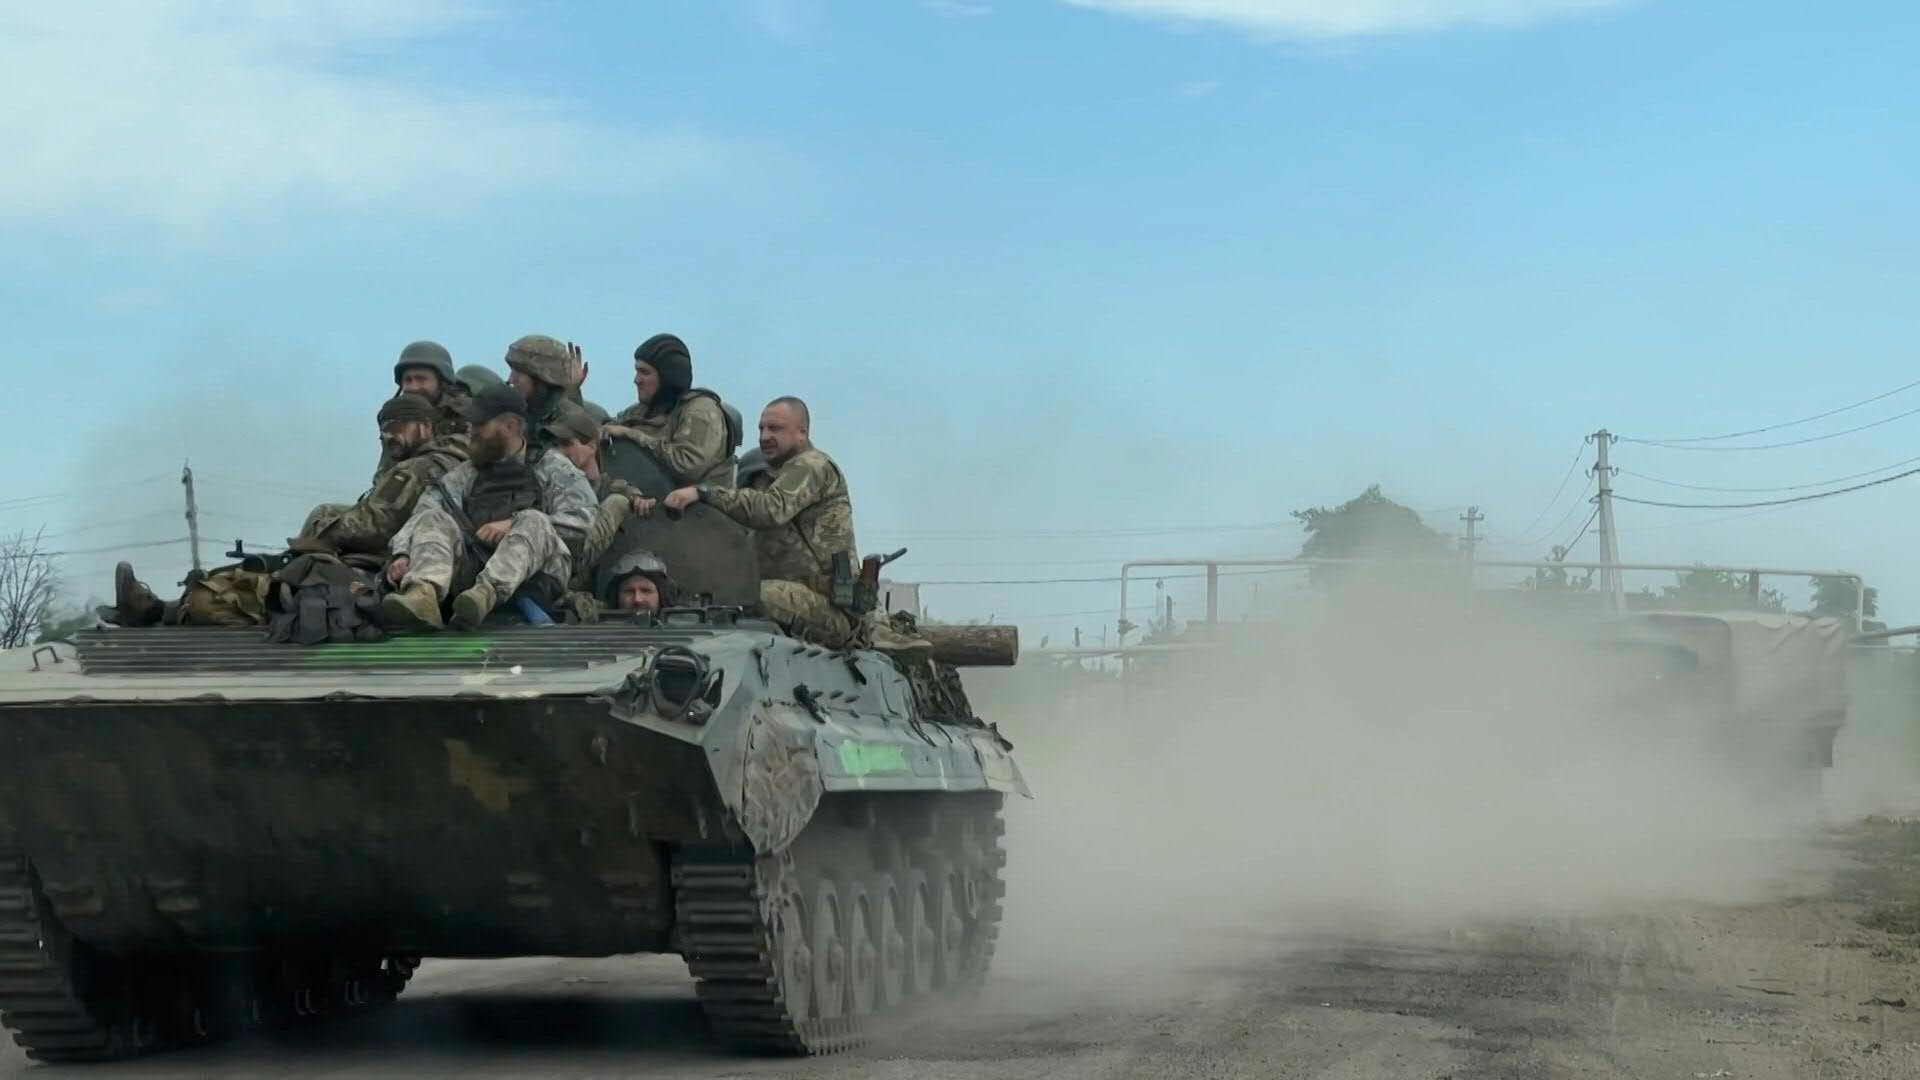 El grupo de expertos Instituto para el Estudio de la Guerra dijo este mes que cree que Bielorrusia está llevando a cabo una “operación de información destinada a fijar las fuerzas ucranianas en la frontera”. (AFP)